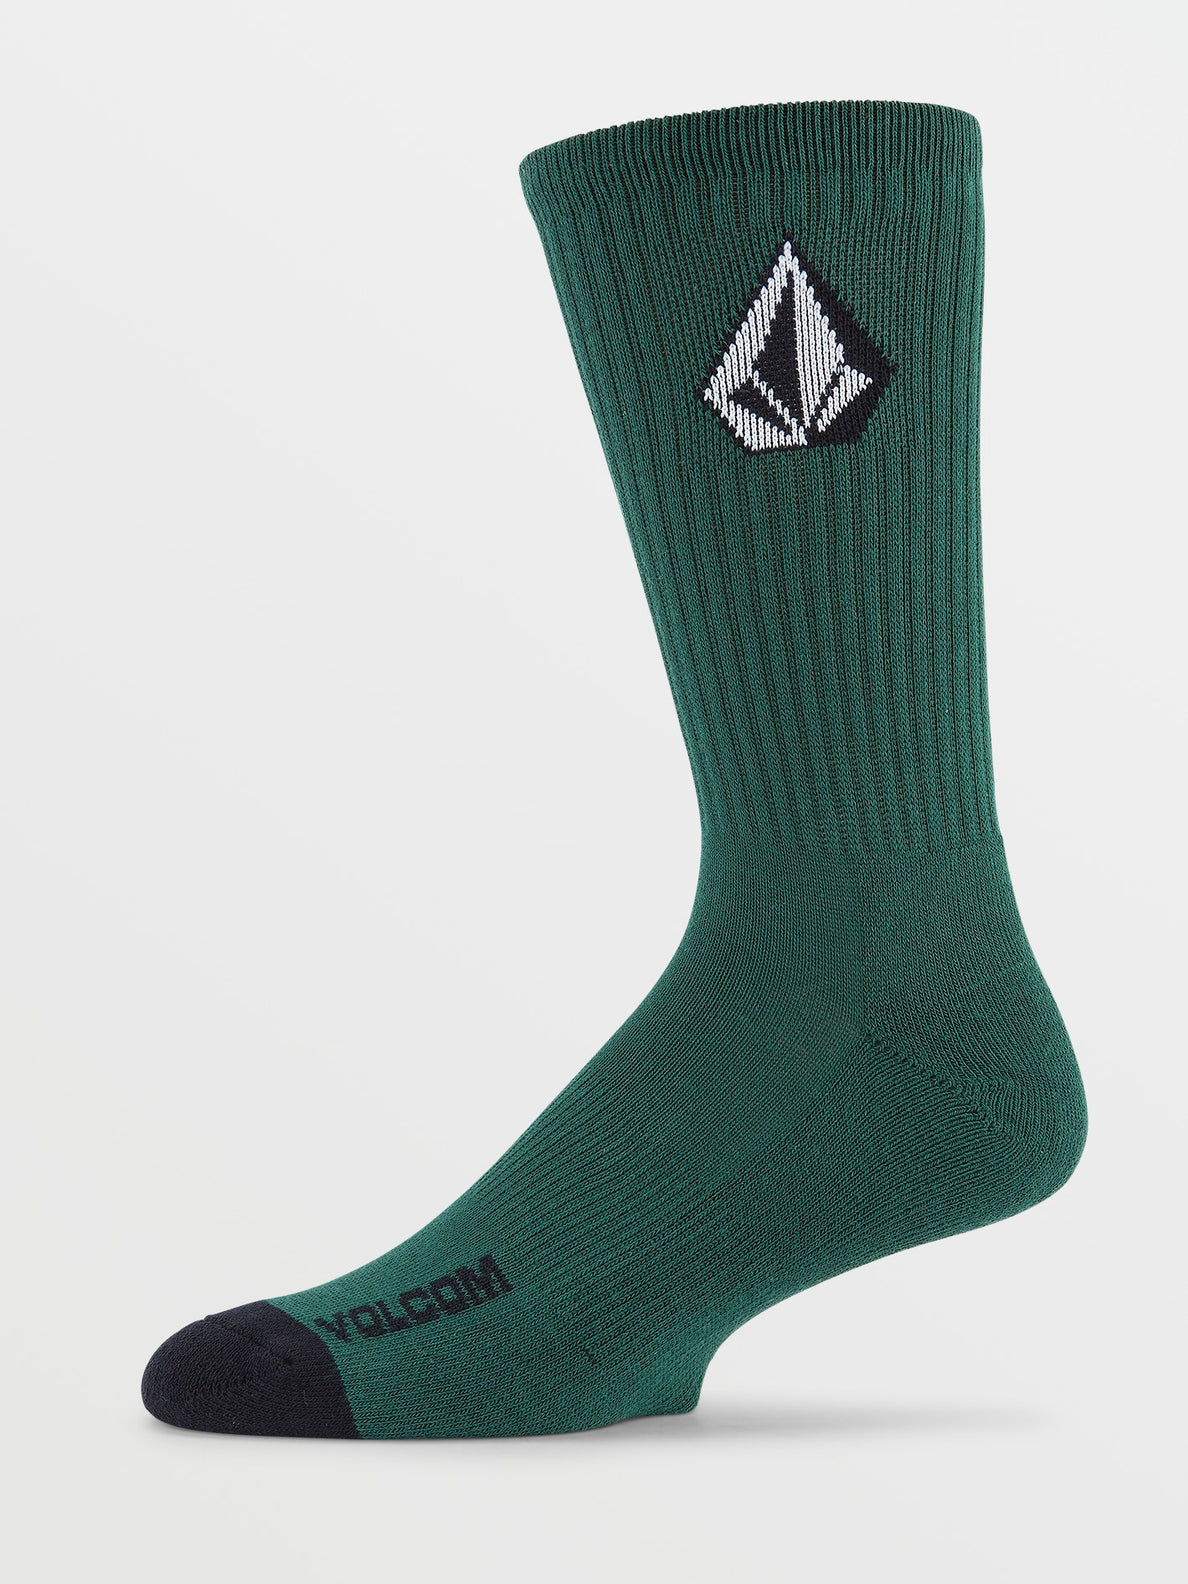 Full Stone 3 Pack Socks - Ranger Green